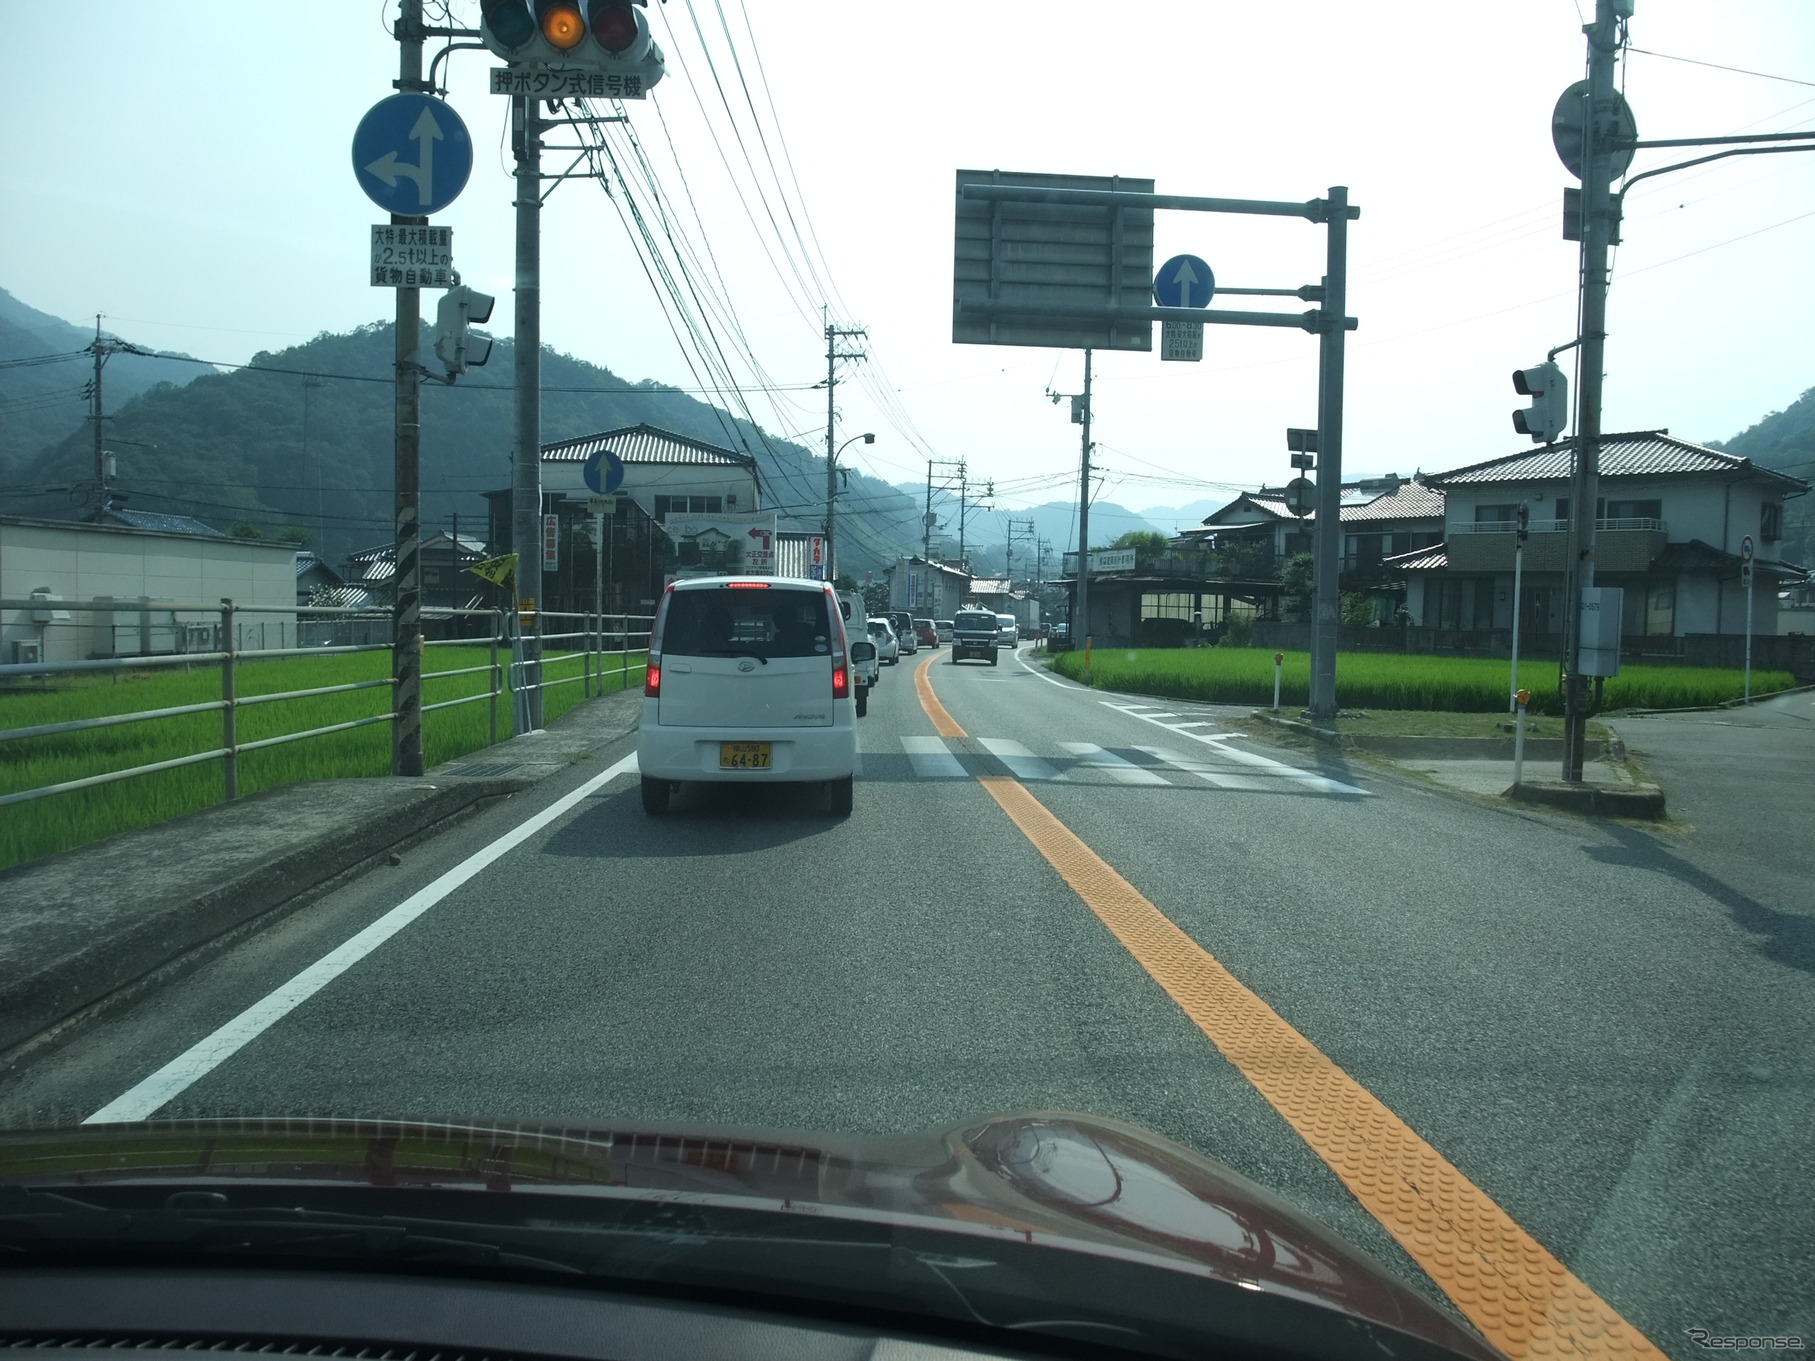 どこの田舎道か！？と思うこの道路が、れっきとした1ケタ国道。日本の道路インフラが先進国中最低と言われるゆえんだ。